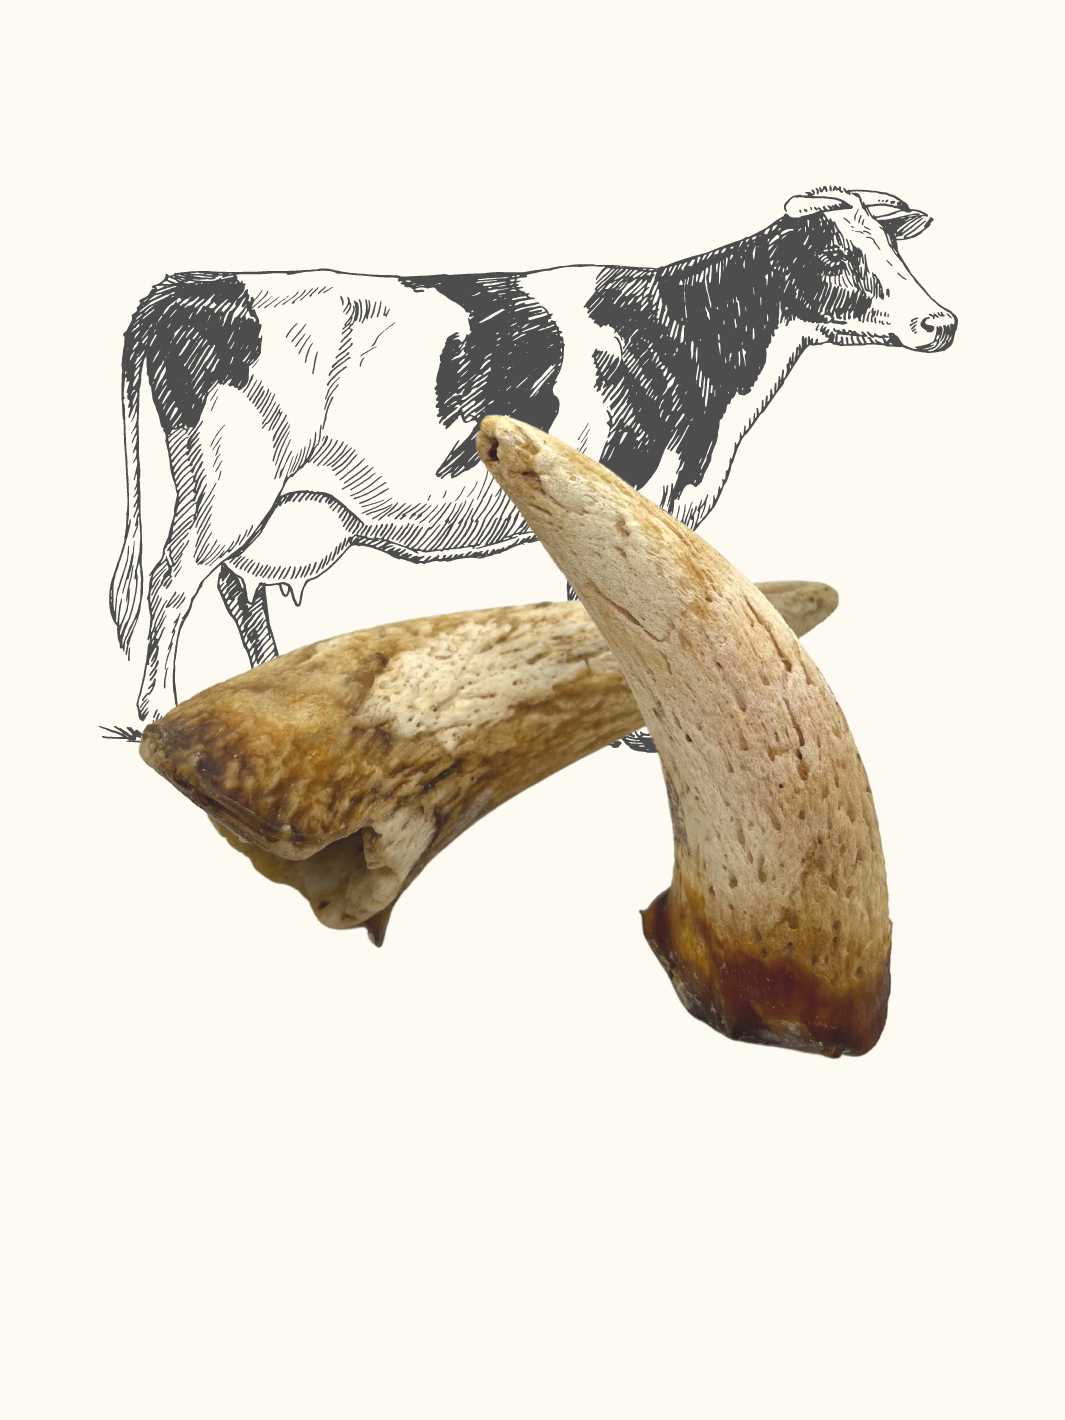 Noyau corne de vache - #friandise_naturelle_pour_chien# - Truffe delice